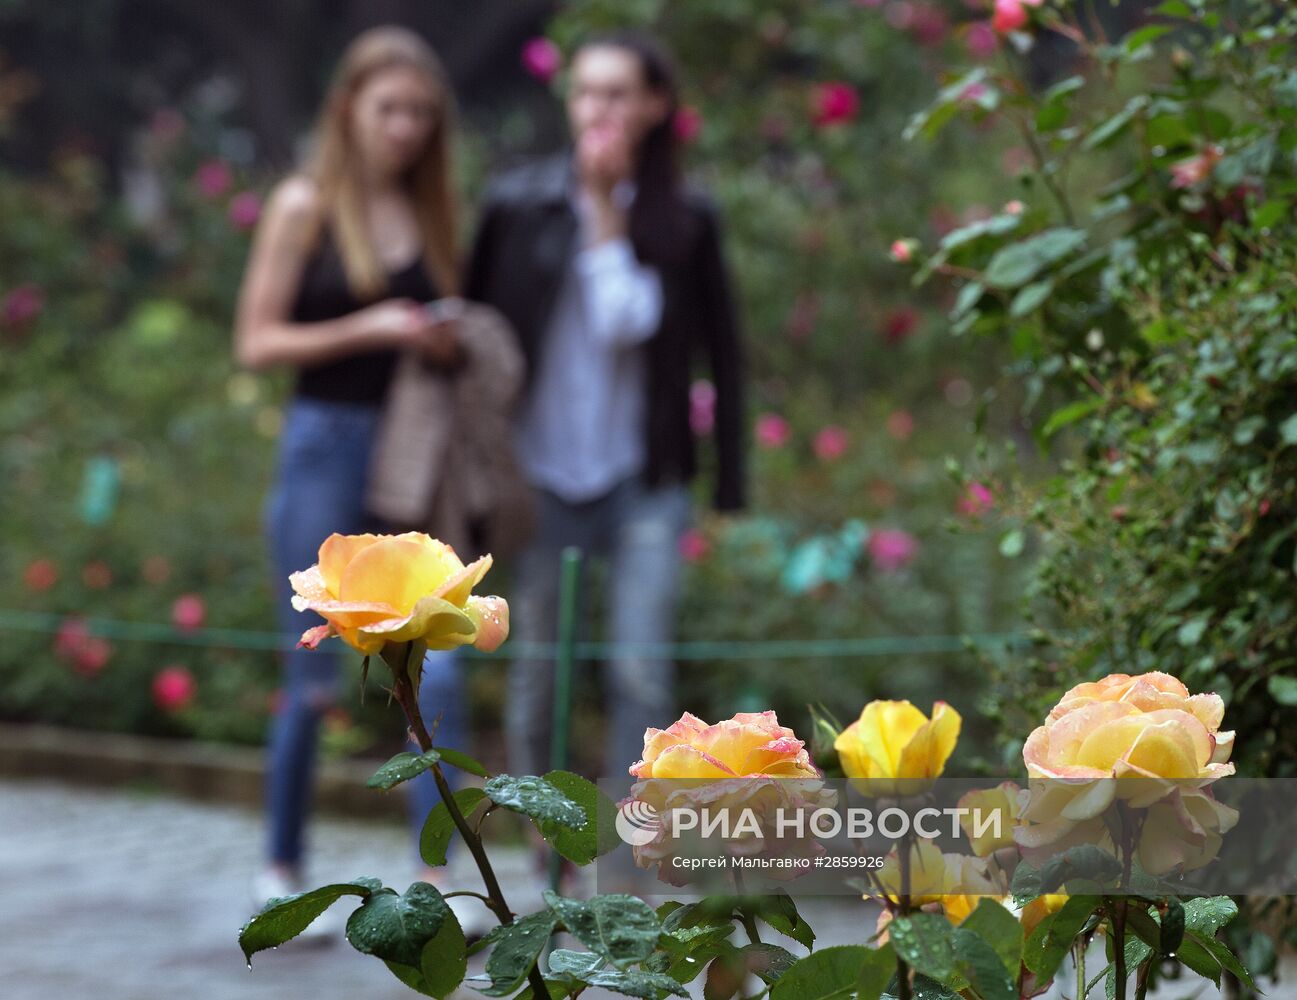 Выставка "Розовый вальс" в Крыму